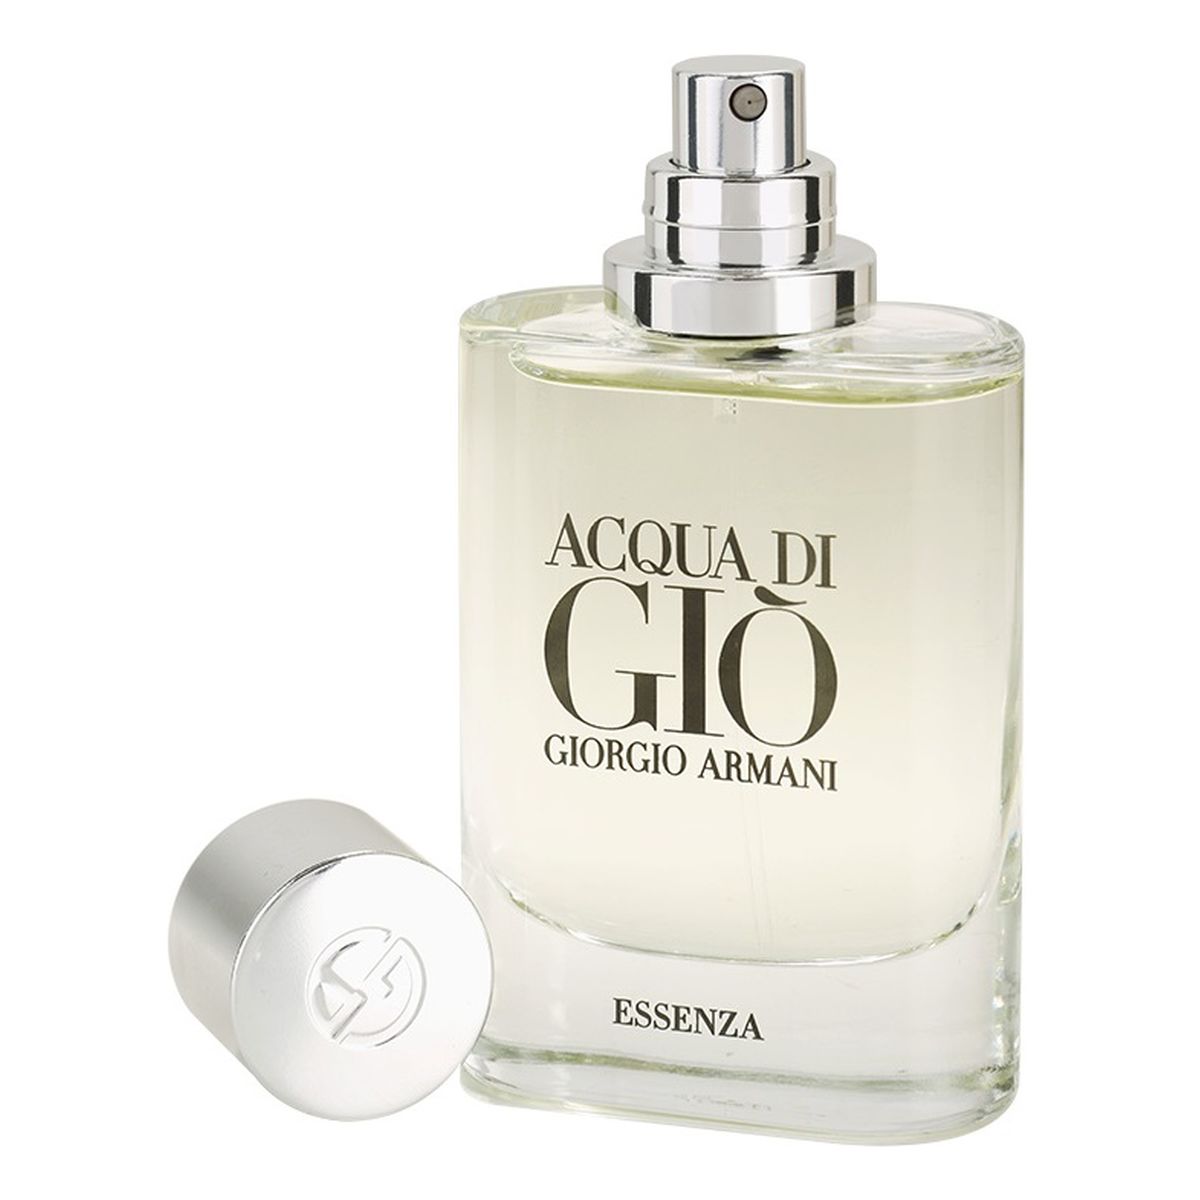 Giorgio Armani Acqua di Gio Essenza Woda perfumowana spray 40ml